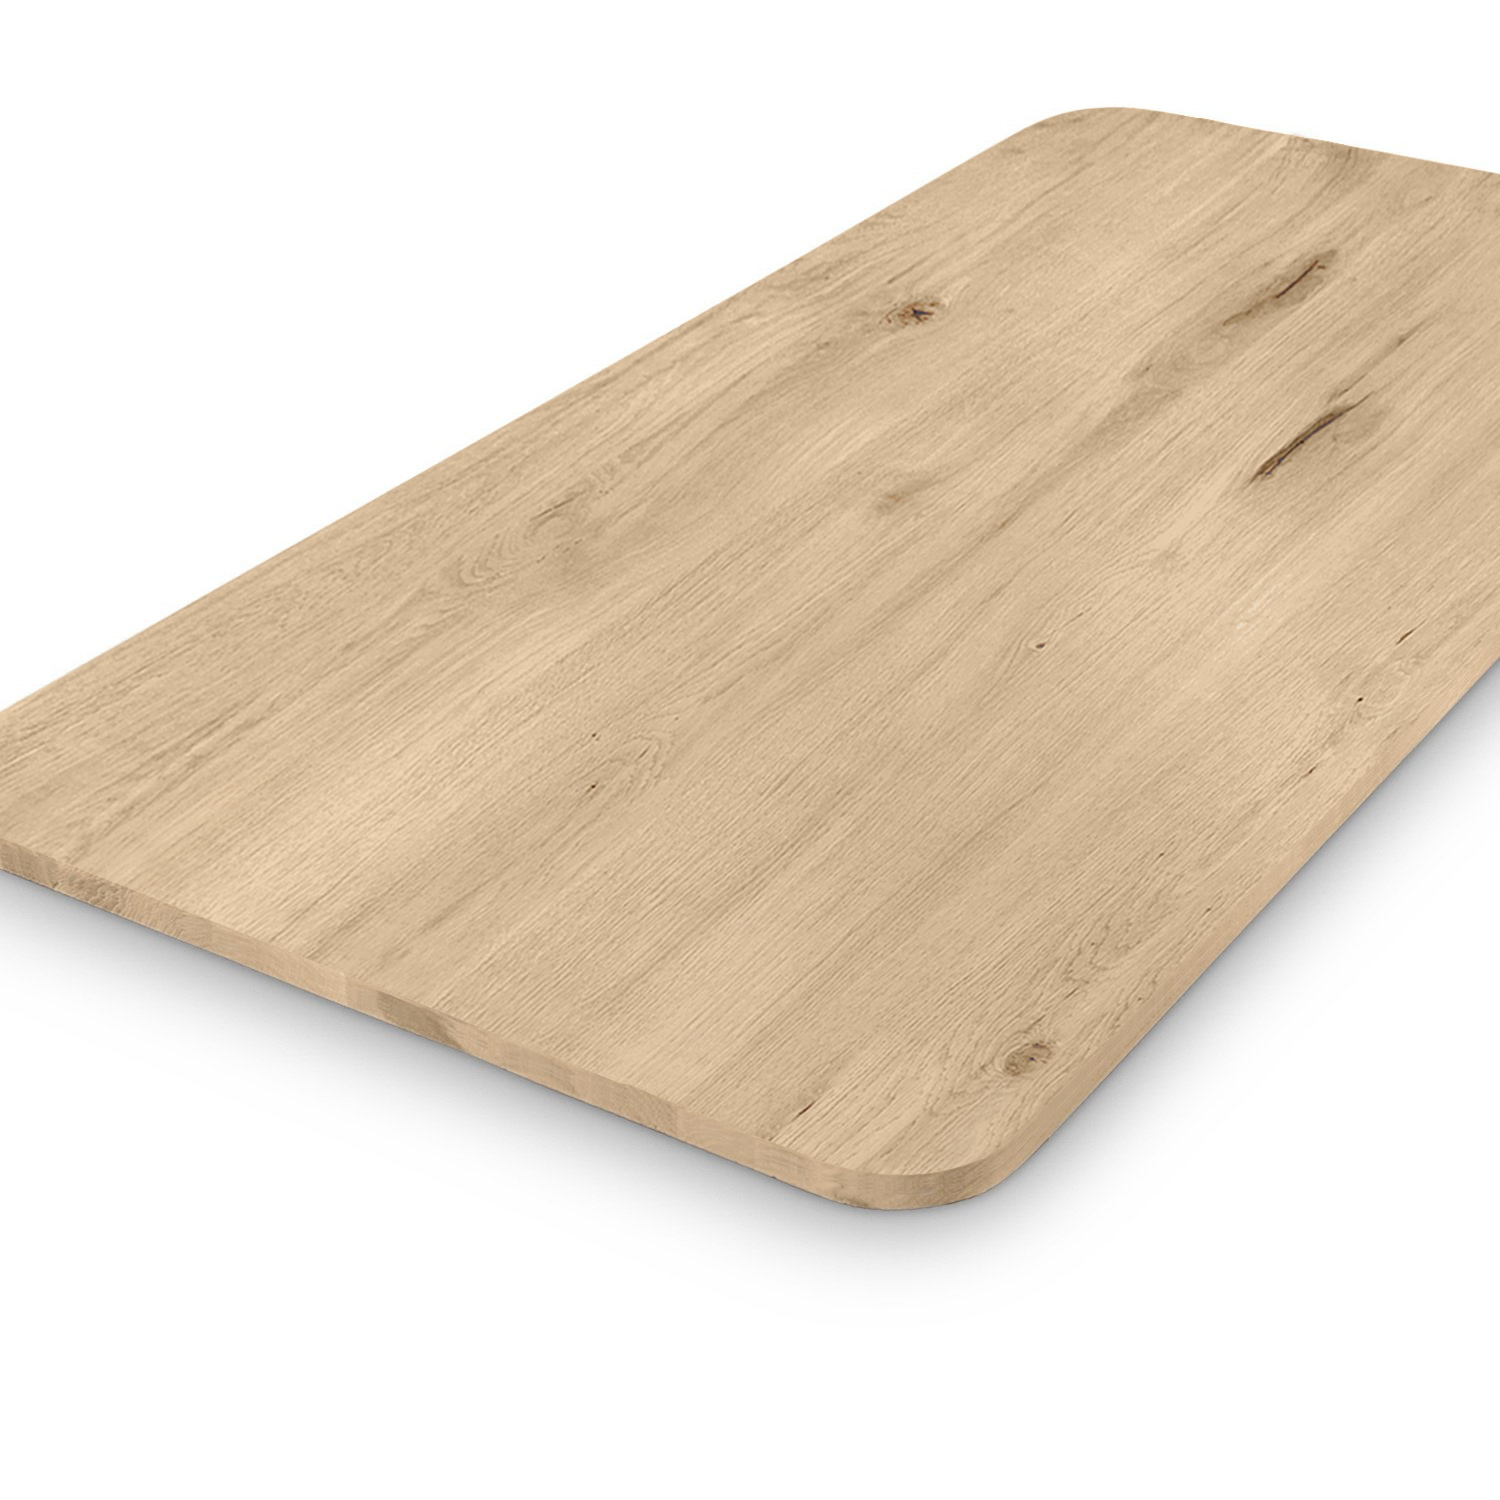  Tischplatte Wildeiche - mit runden Ecken - nach Maß - 3 cm dick (1-Schicht) - XXL Lamellen (14-20 cm breit) - Asteiche (rustikal) - verleimt & künstlich getrocknet (HF 8-12%) - mit abgerundeten Kanten - 40-117x80-250 cm